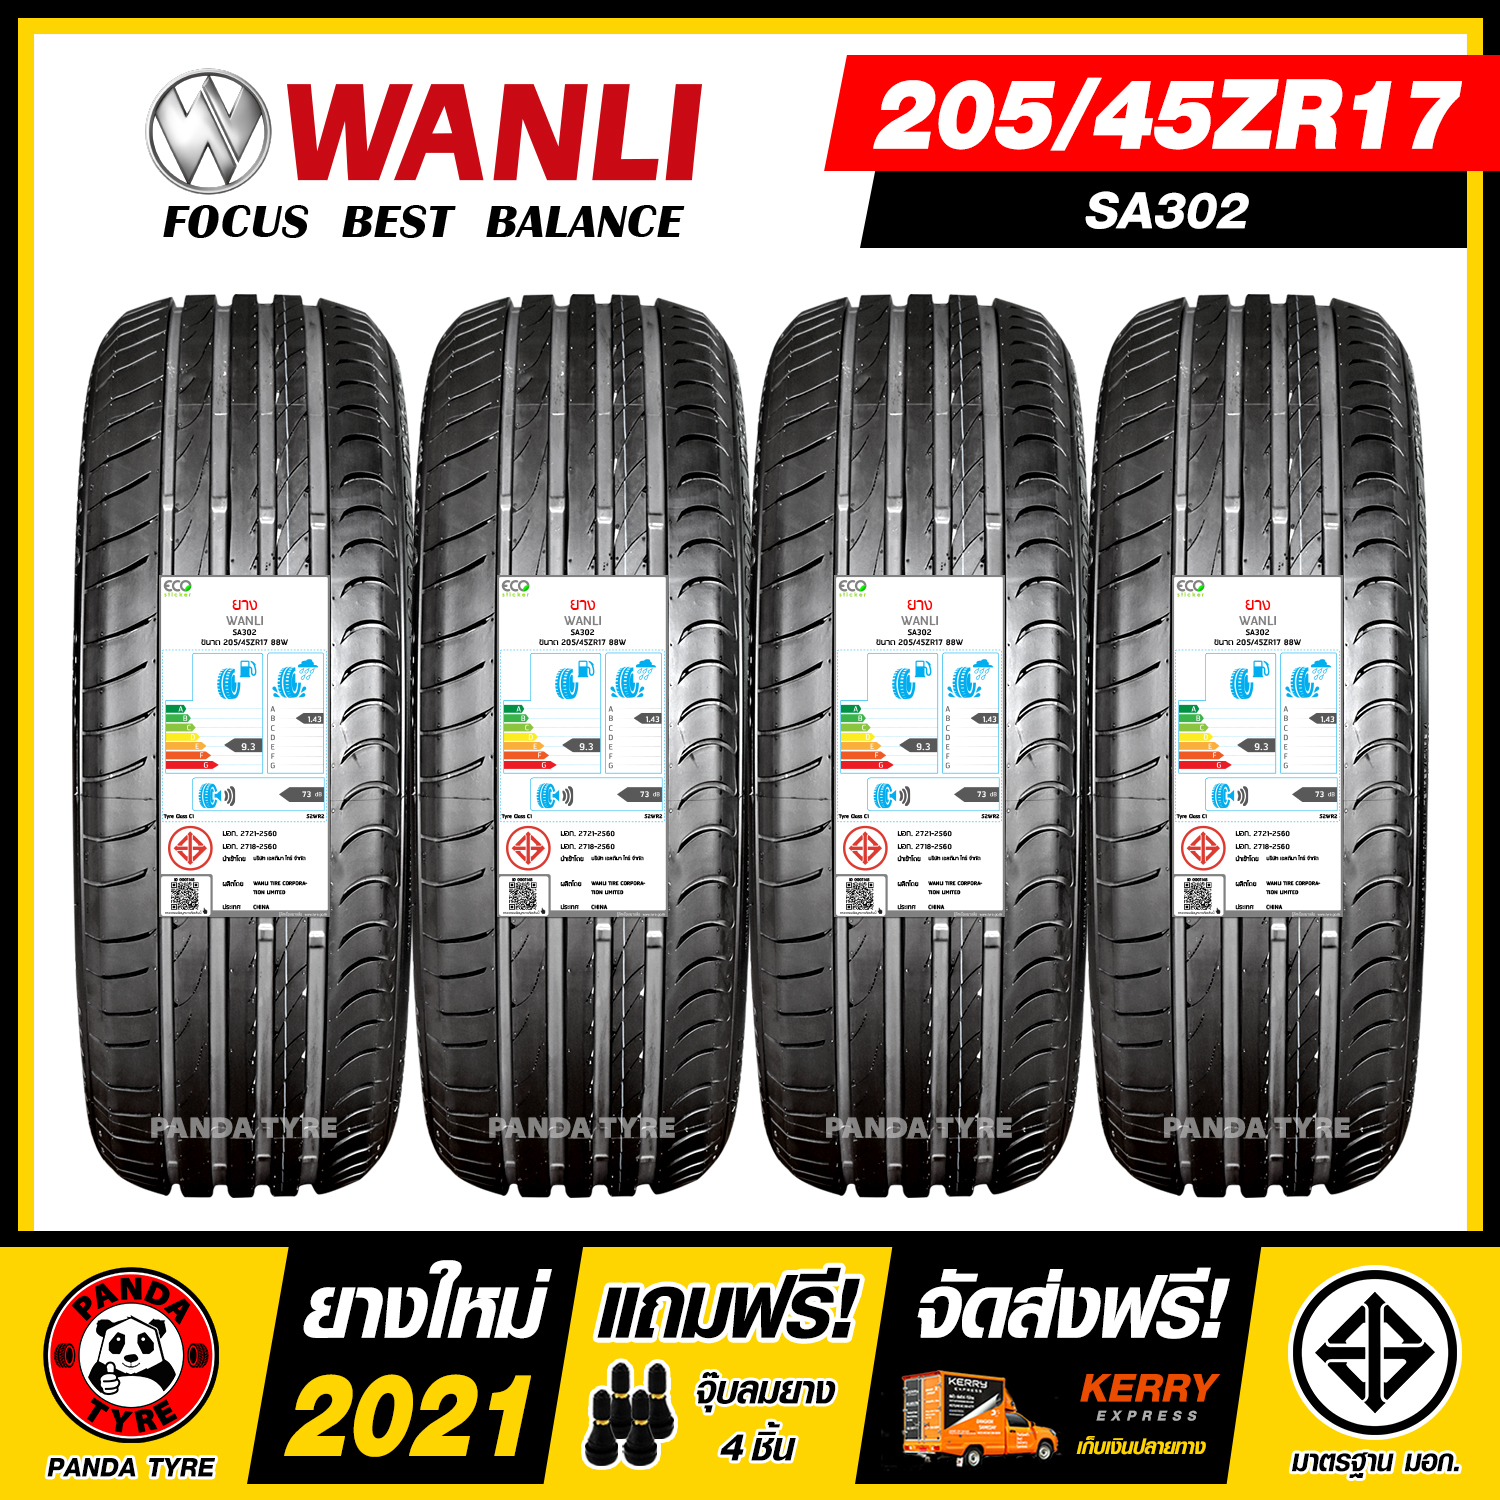 WANLI 205/45R17 ยางรถยนต์ขอบ17 รุ่น SA302 - 4 เส้น (ยางใหม่ผลิตปี 2021)